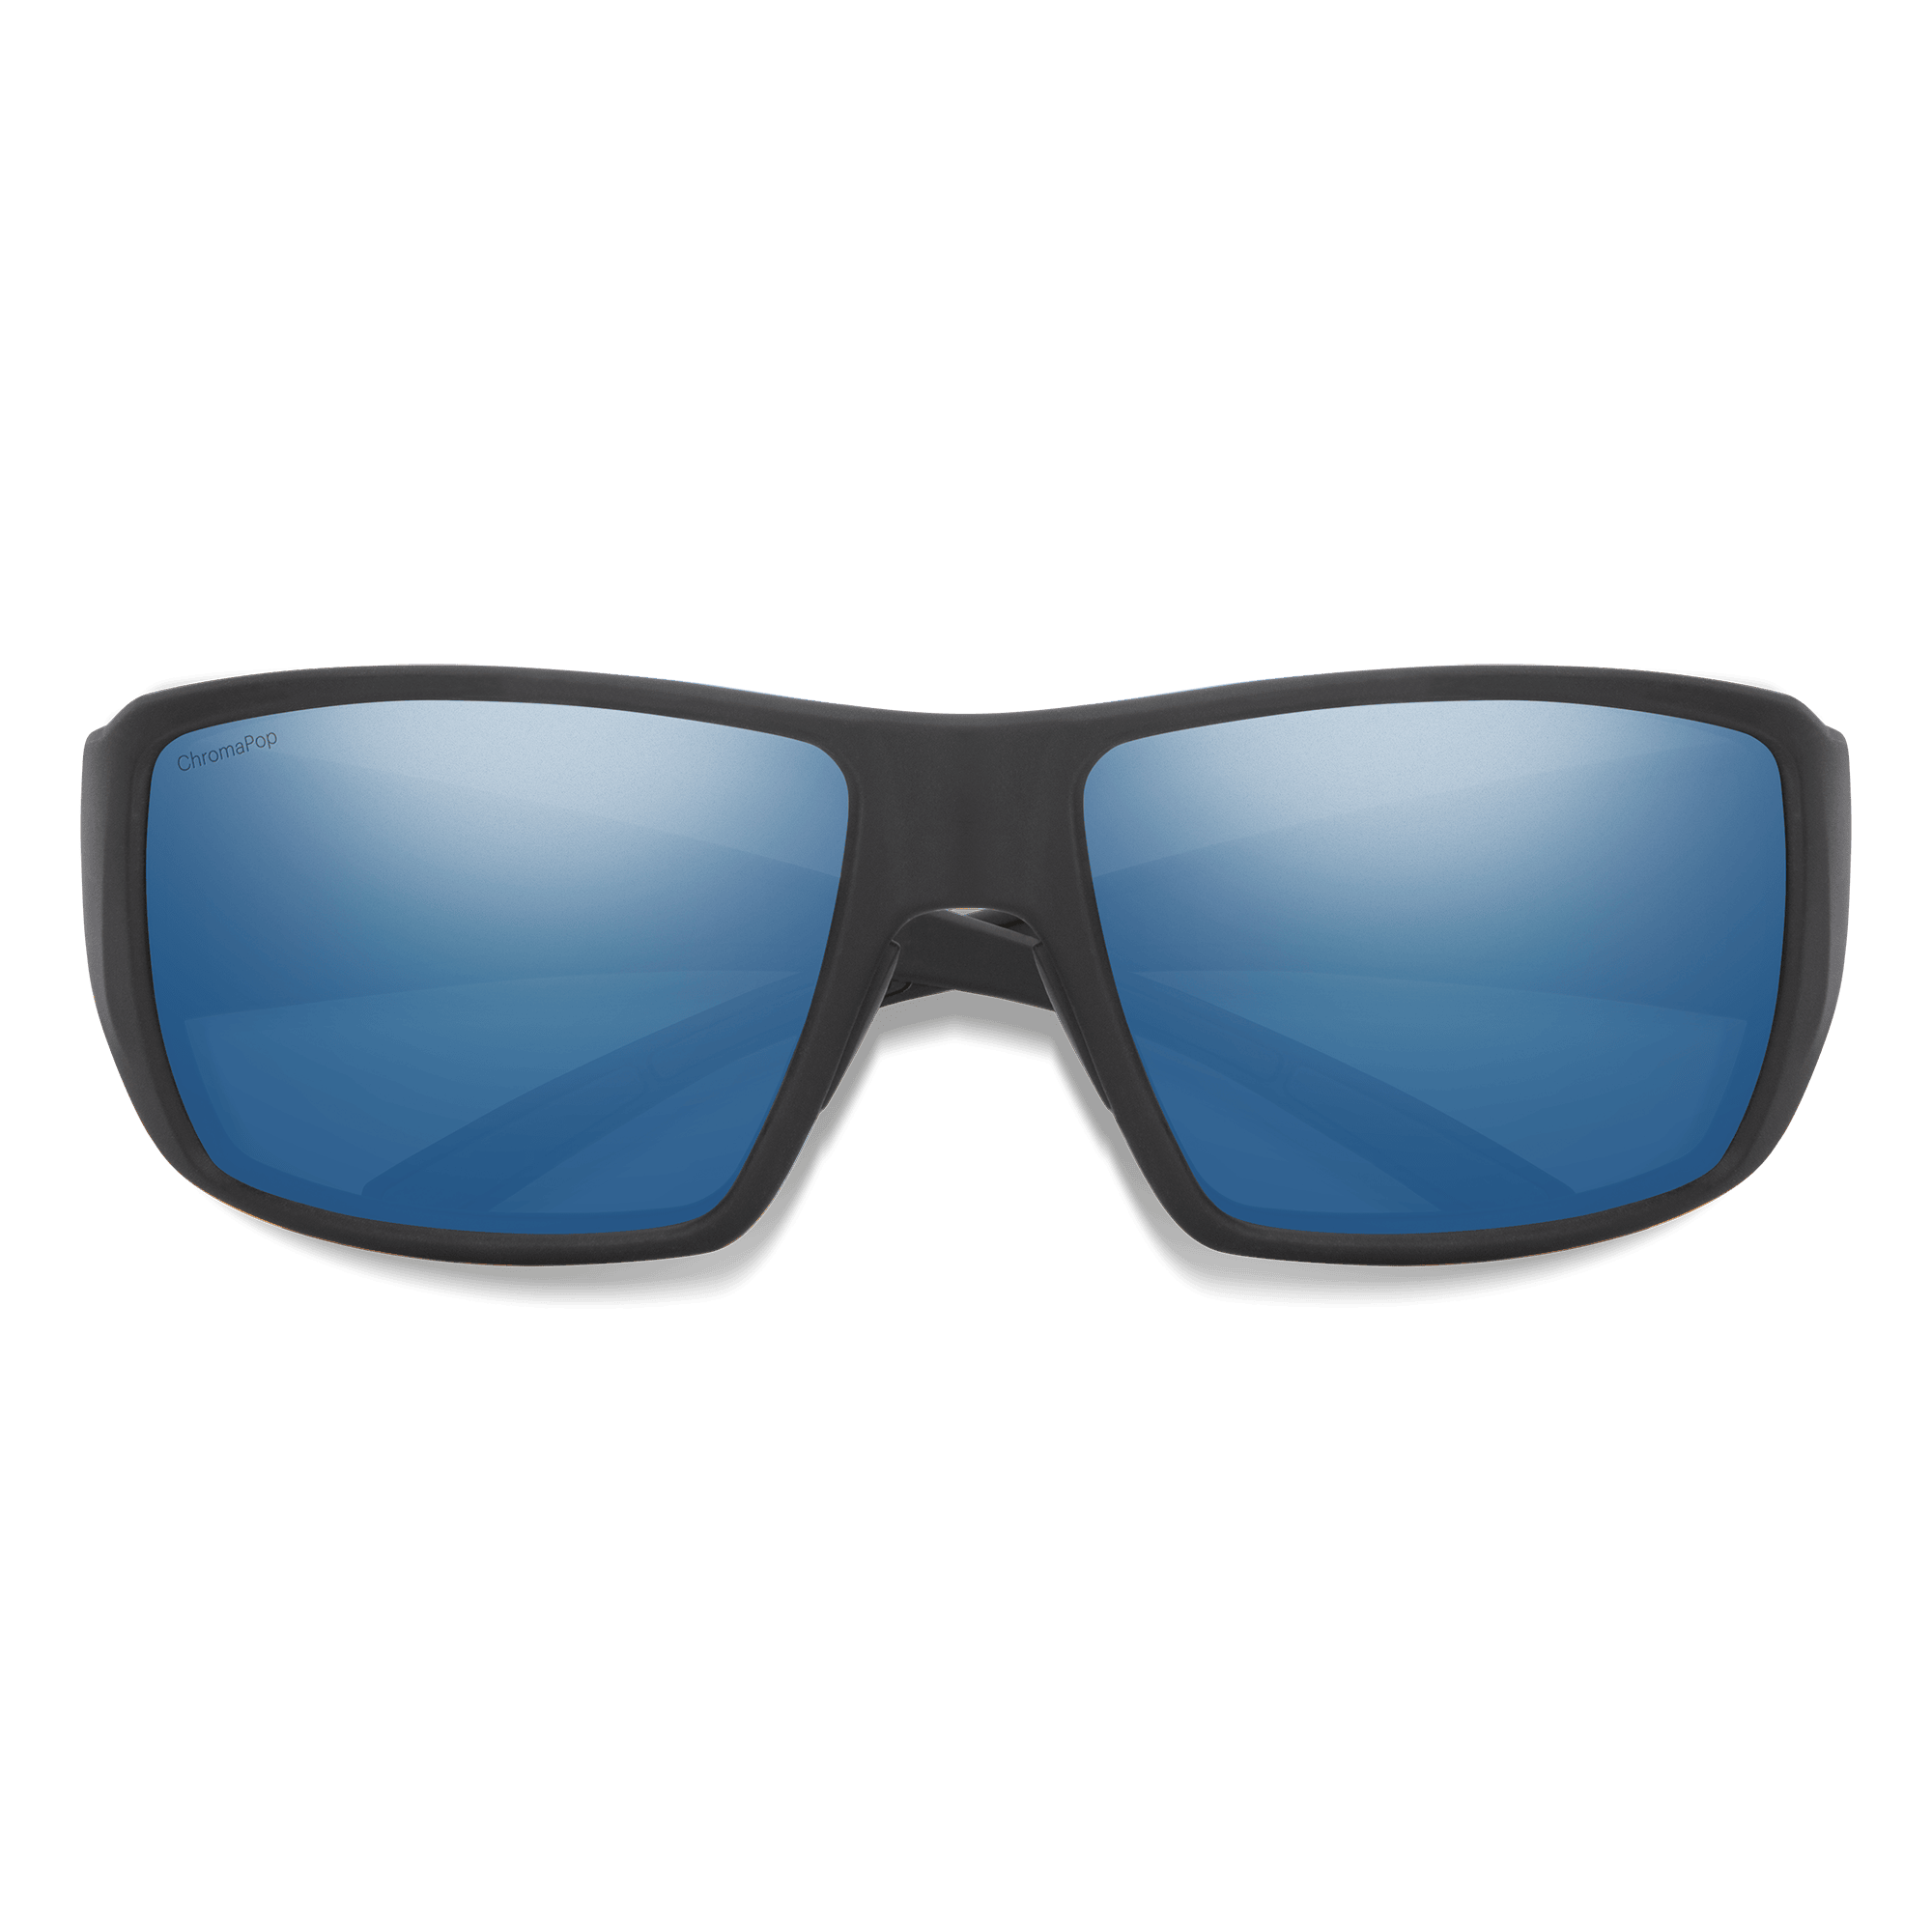 Guide's Choice, Matte Black + ChromaPop Glass Polarized Blue Mirror Lens, hi-res